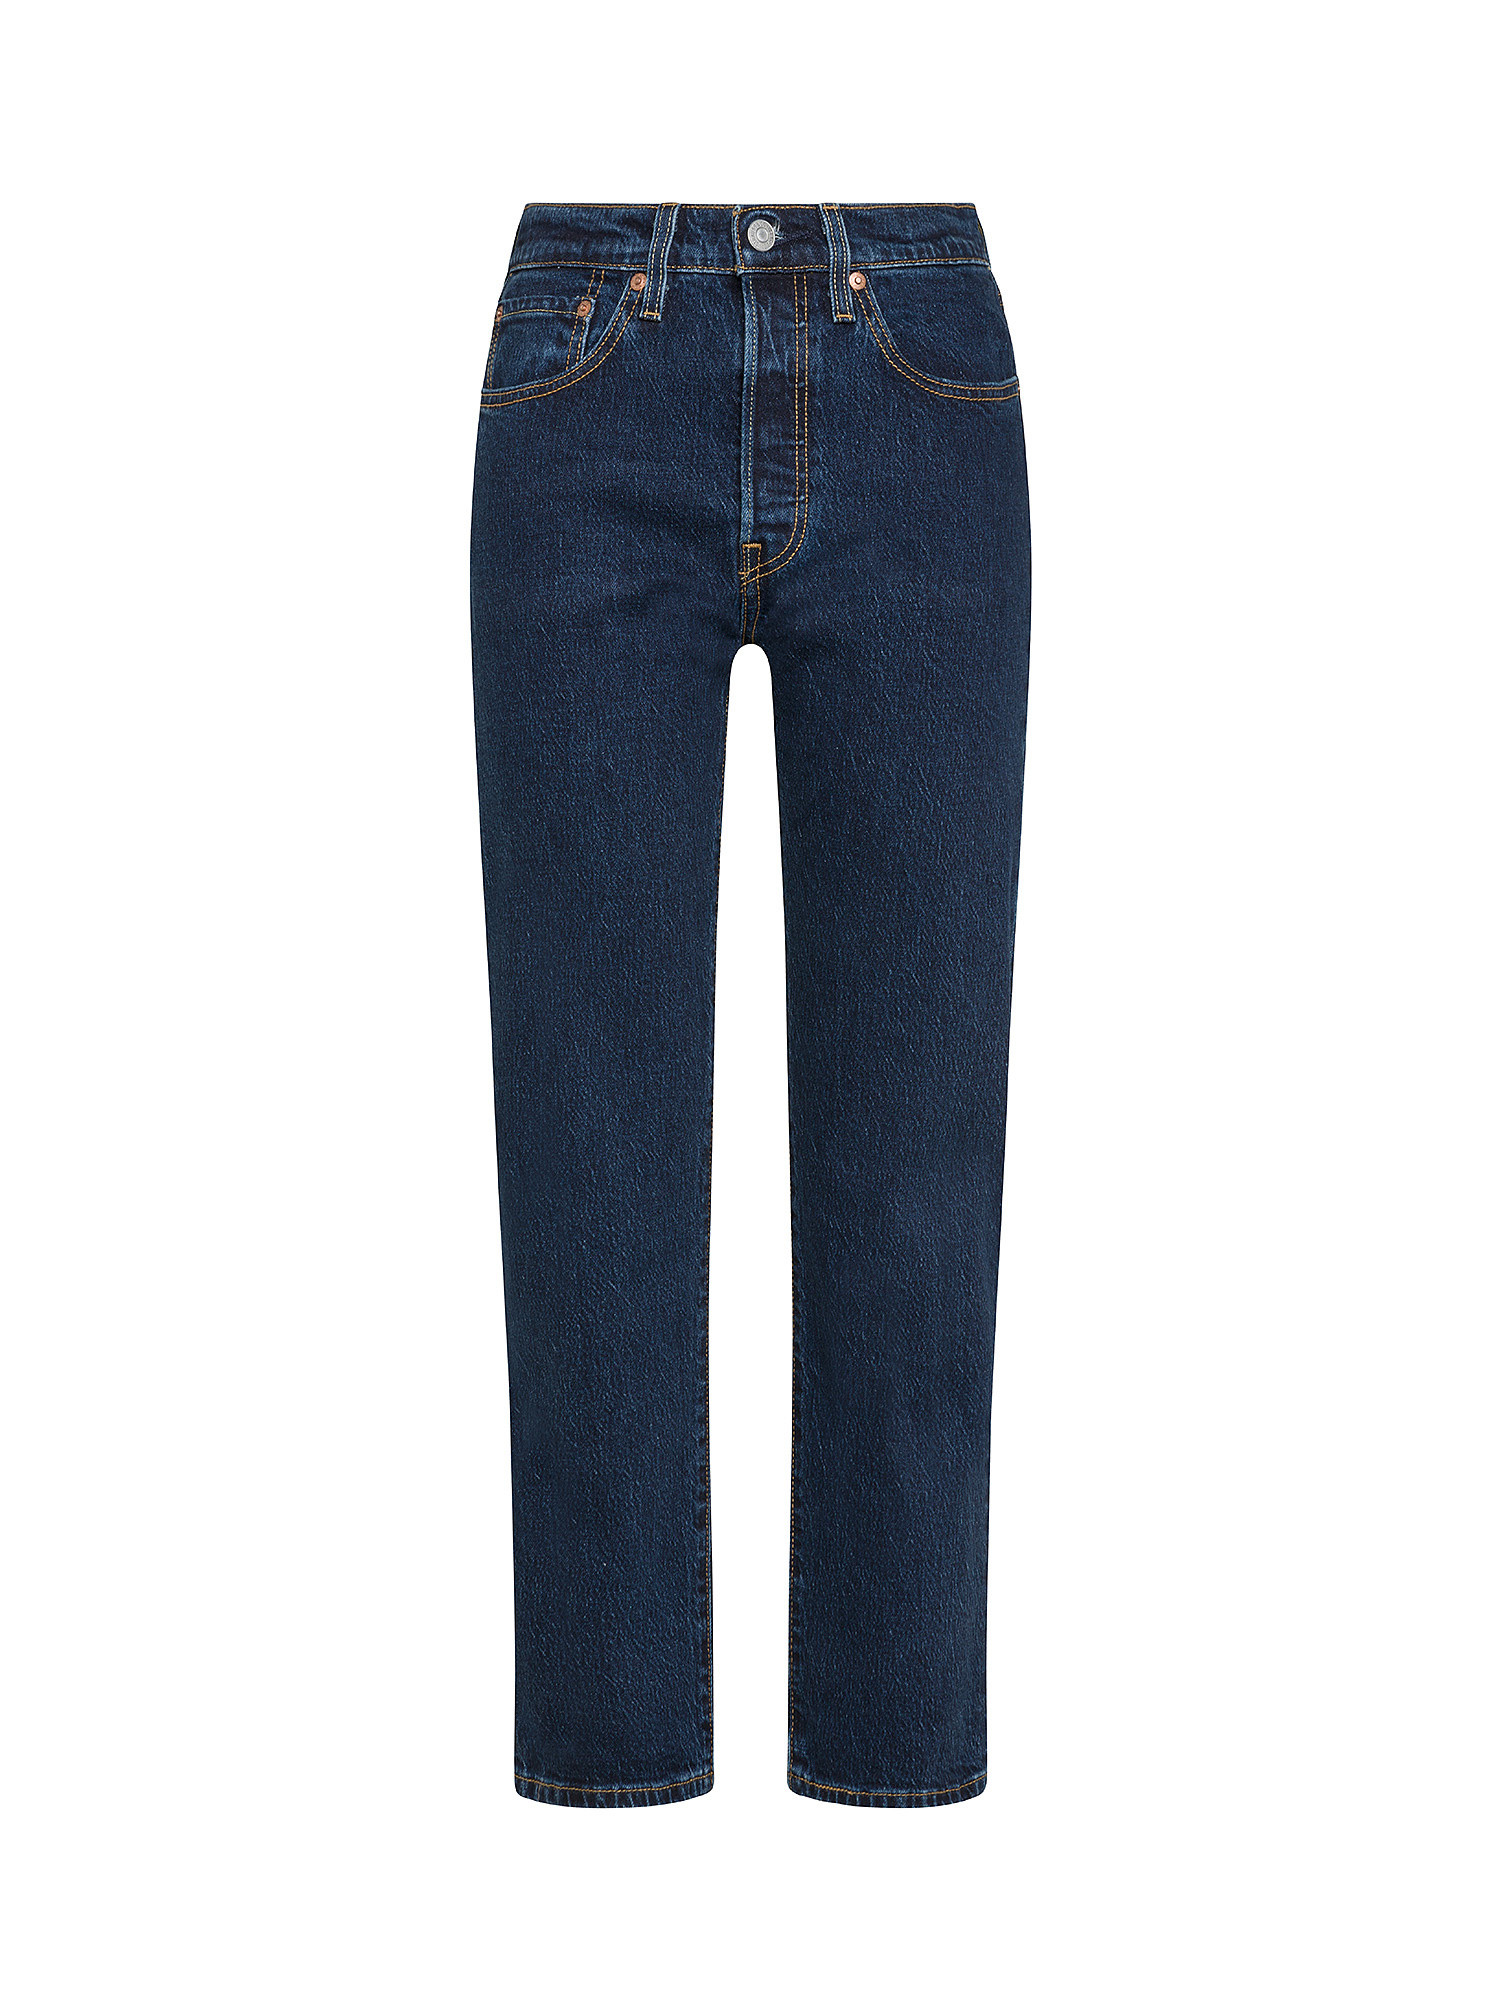 Levi's - original 501® cropped jeans, Denim, large image number 0